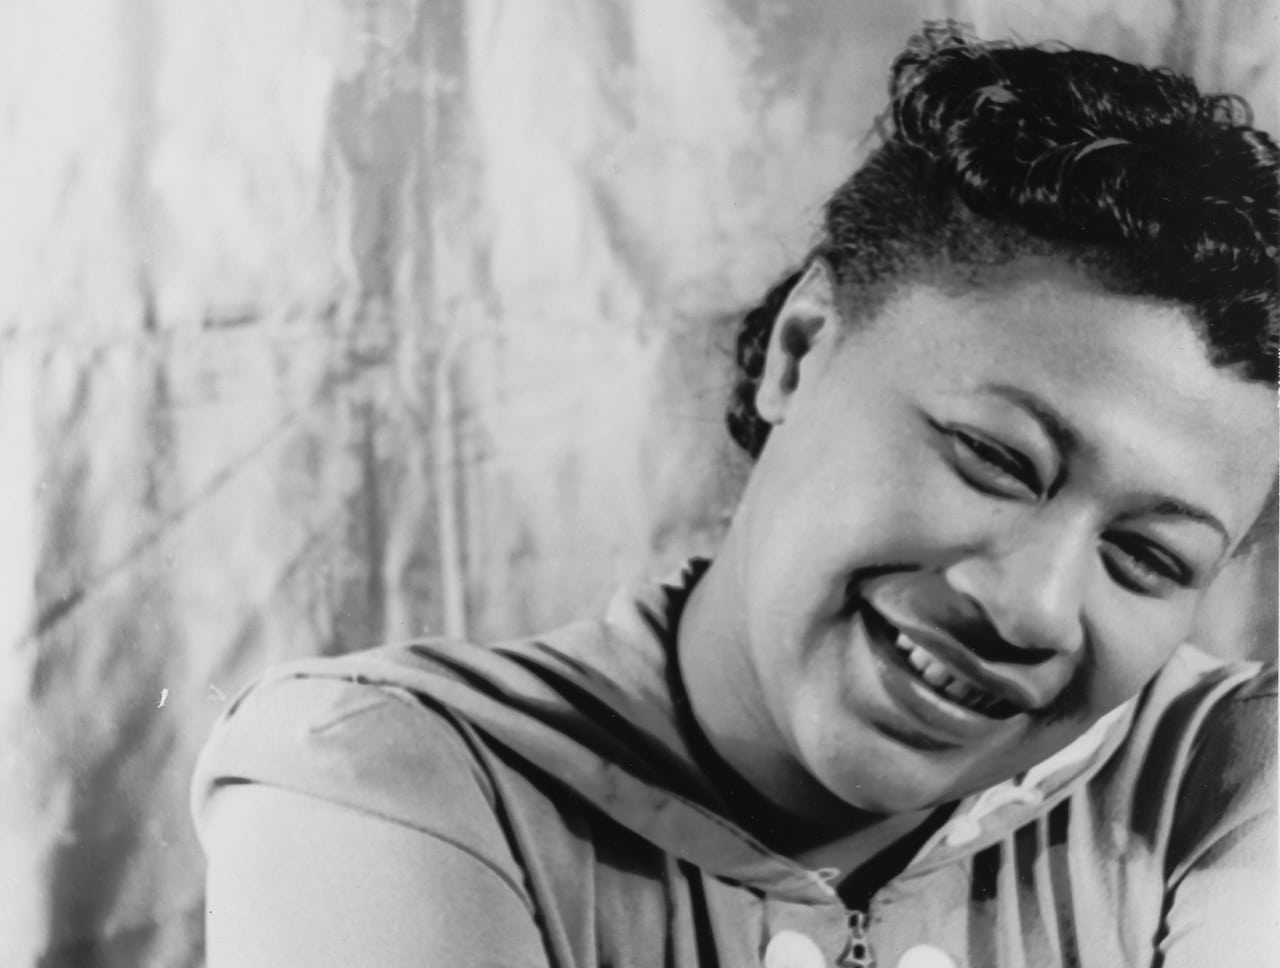 ‘La primera dama del jazz’, Ella Fitzgerald (1918-1996) es una de las voces más icónicas de la música del siglo XX. Grabó decenas de discos y trabajó con Louis Armstrong y Duke Ellington, entre otros. Aunque tuvo que ser operada de corazón en 1986, volvió a los escenarios un año después para no abandonarlos hasta su muerte.